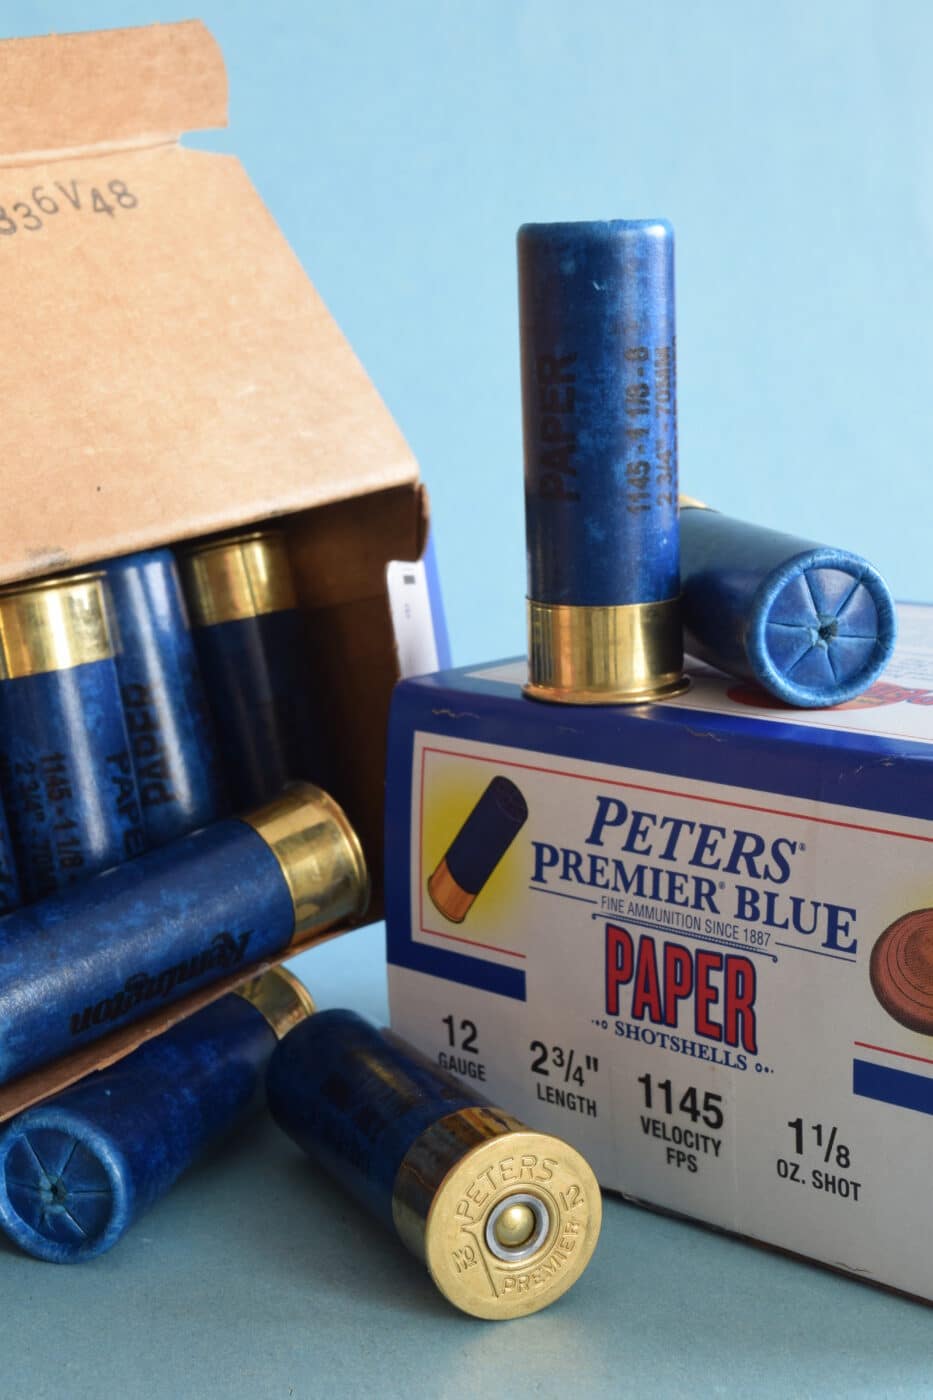 Peters Premier Blue paper shotshells with packaging